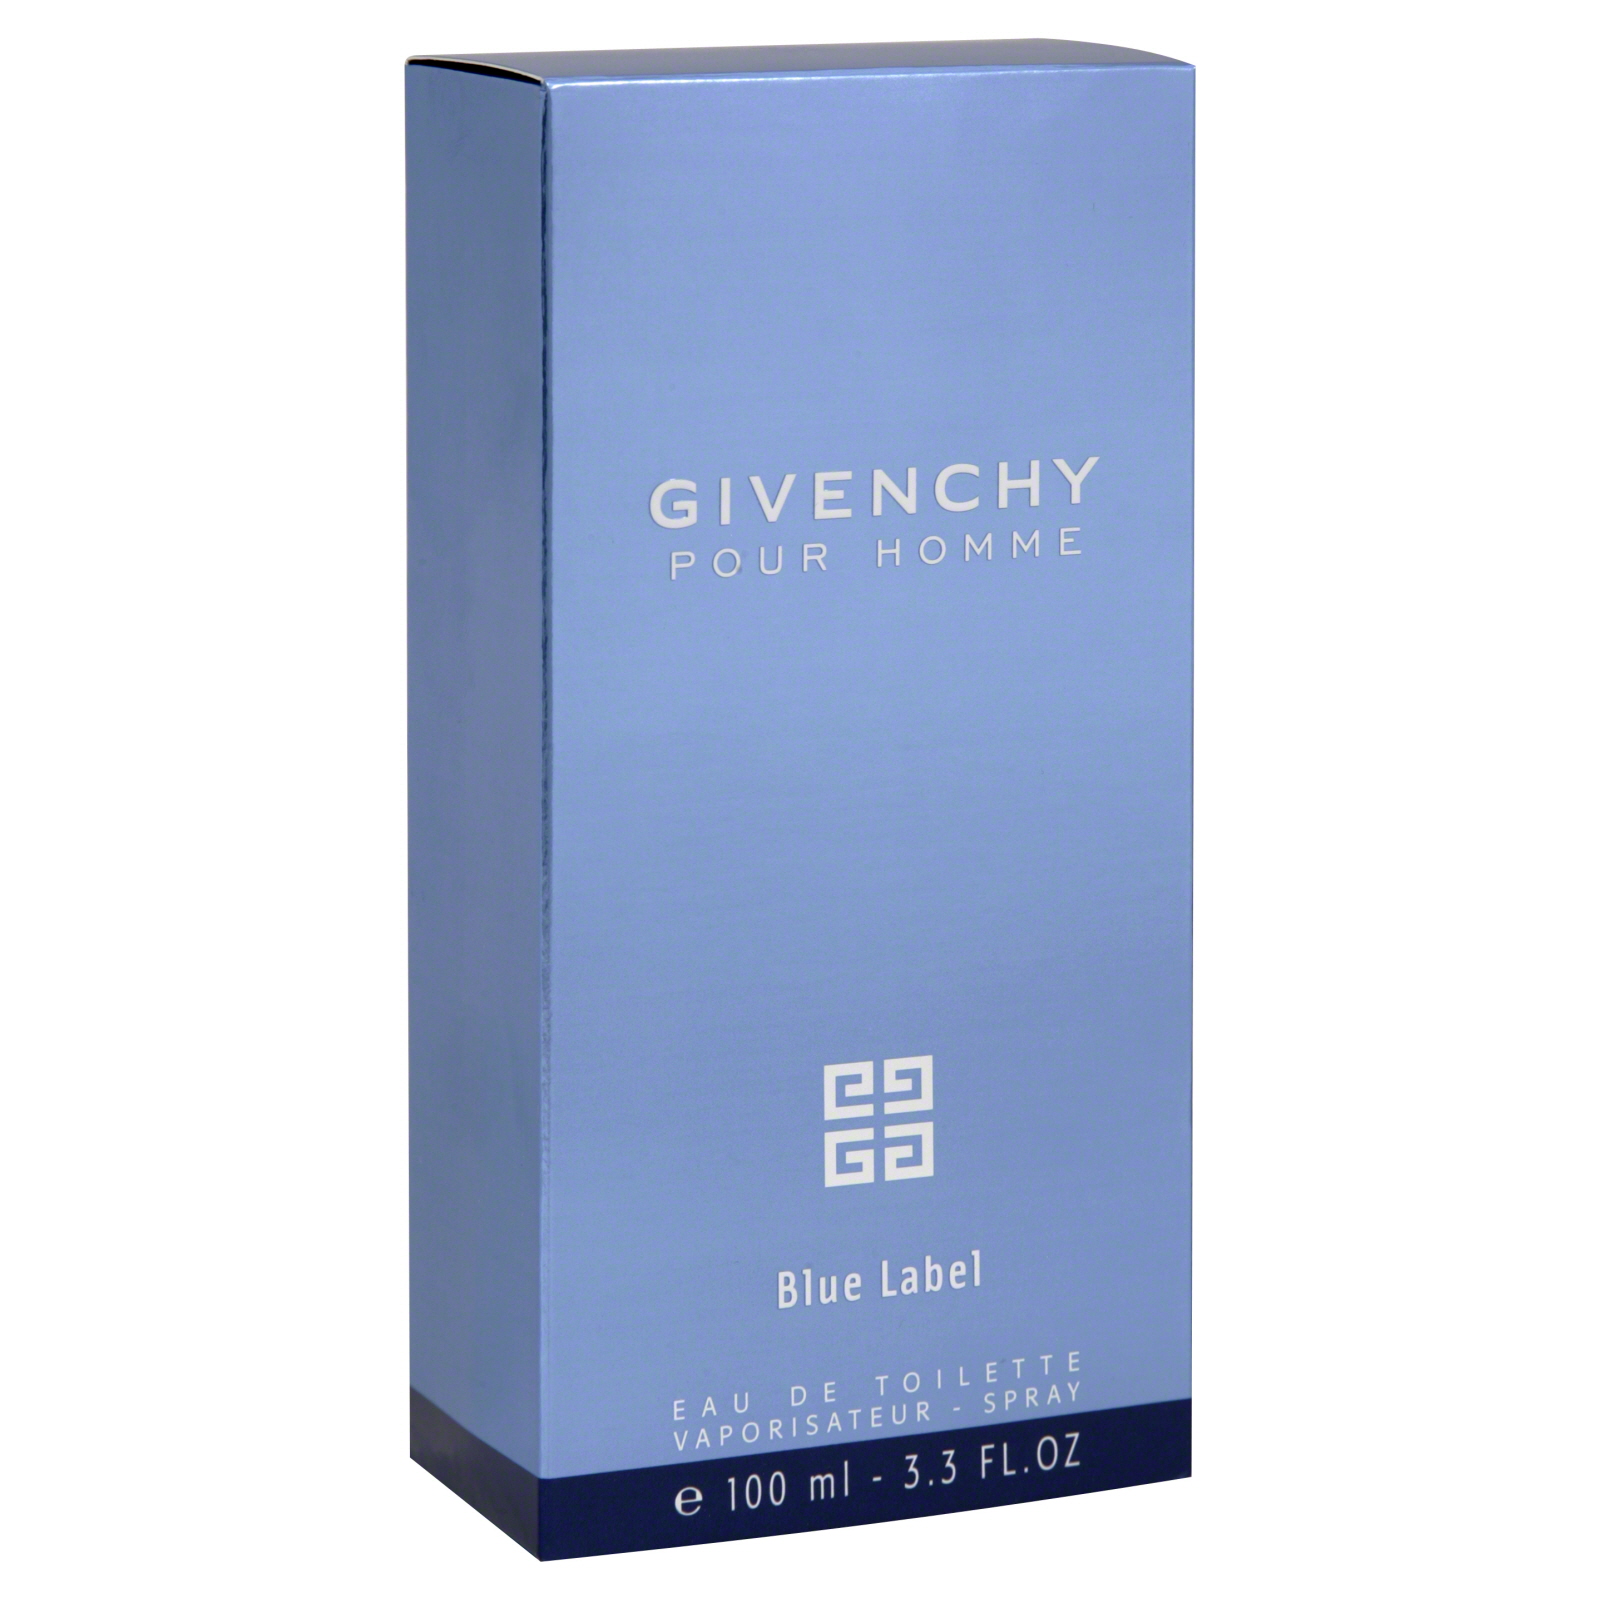 Givenchy Eau de Toilette, Blue Label, 3.3 fl oz (100 ml)